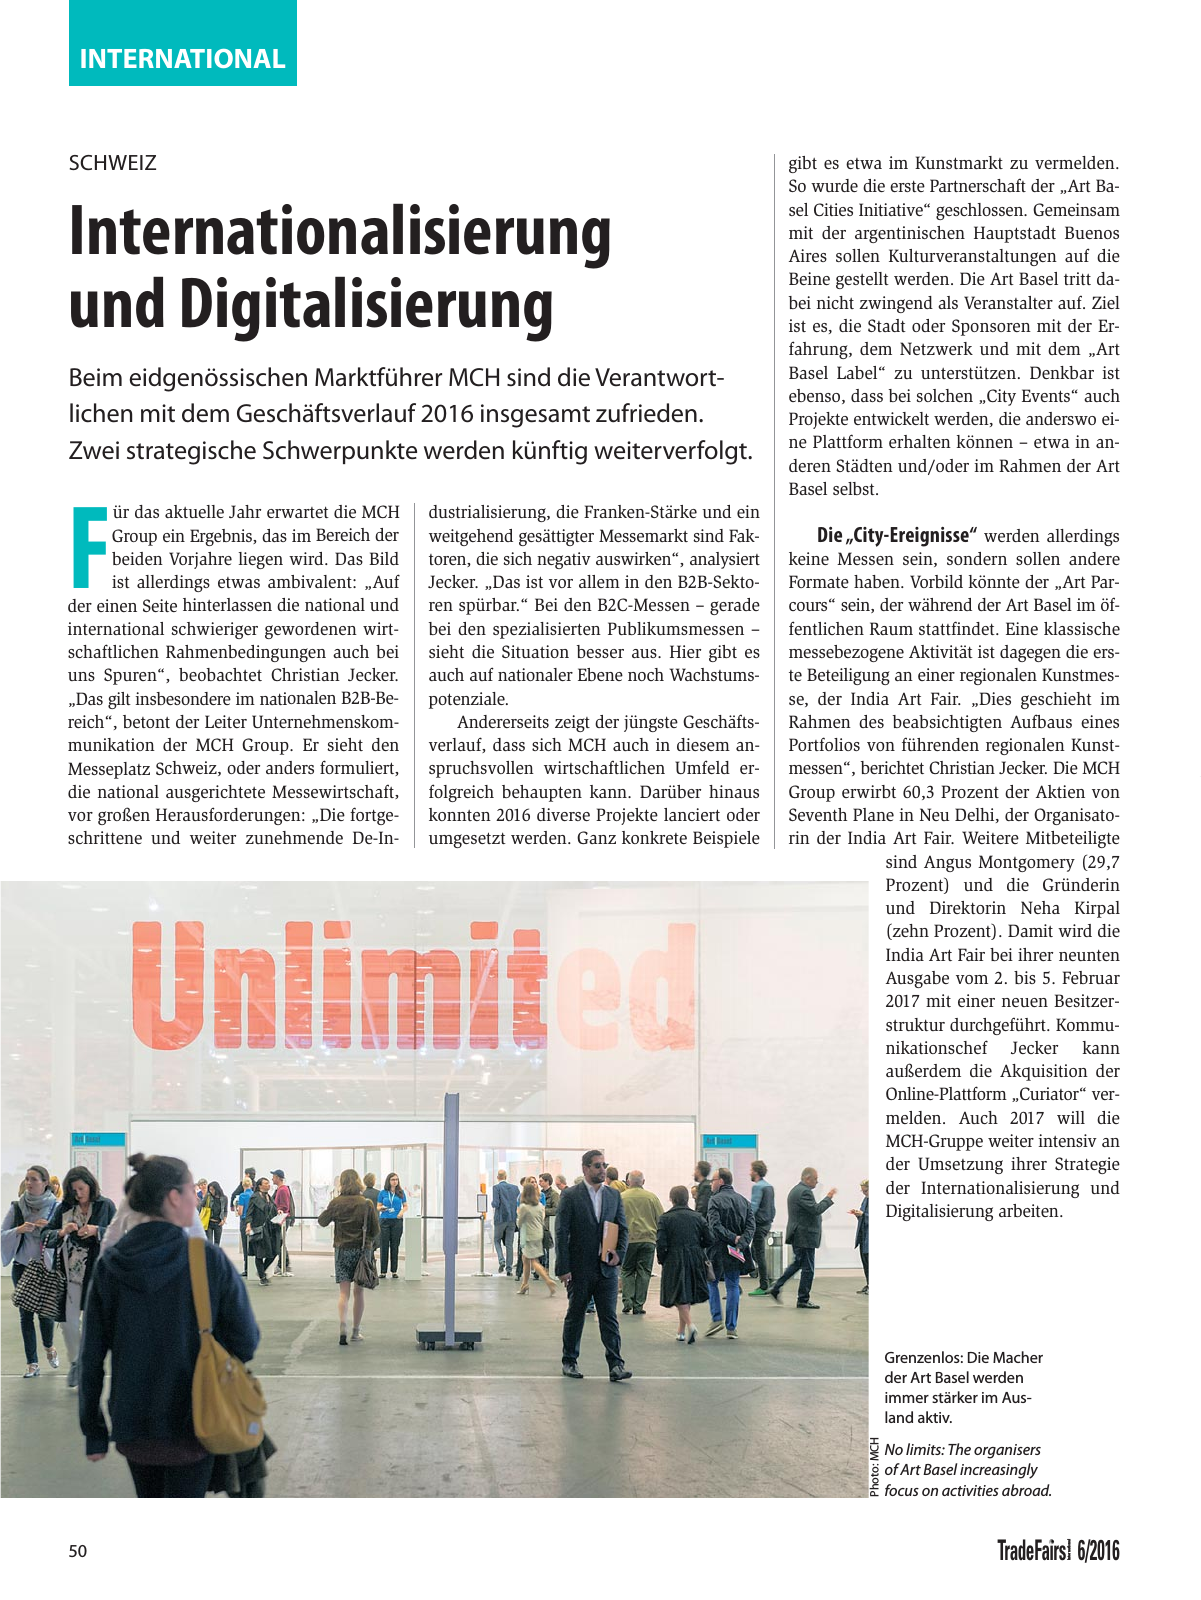 Vorschau TFI Trade-Fairs-International 06/2016 Seite 50